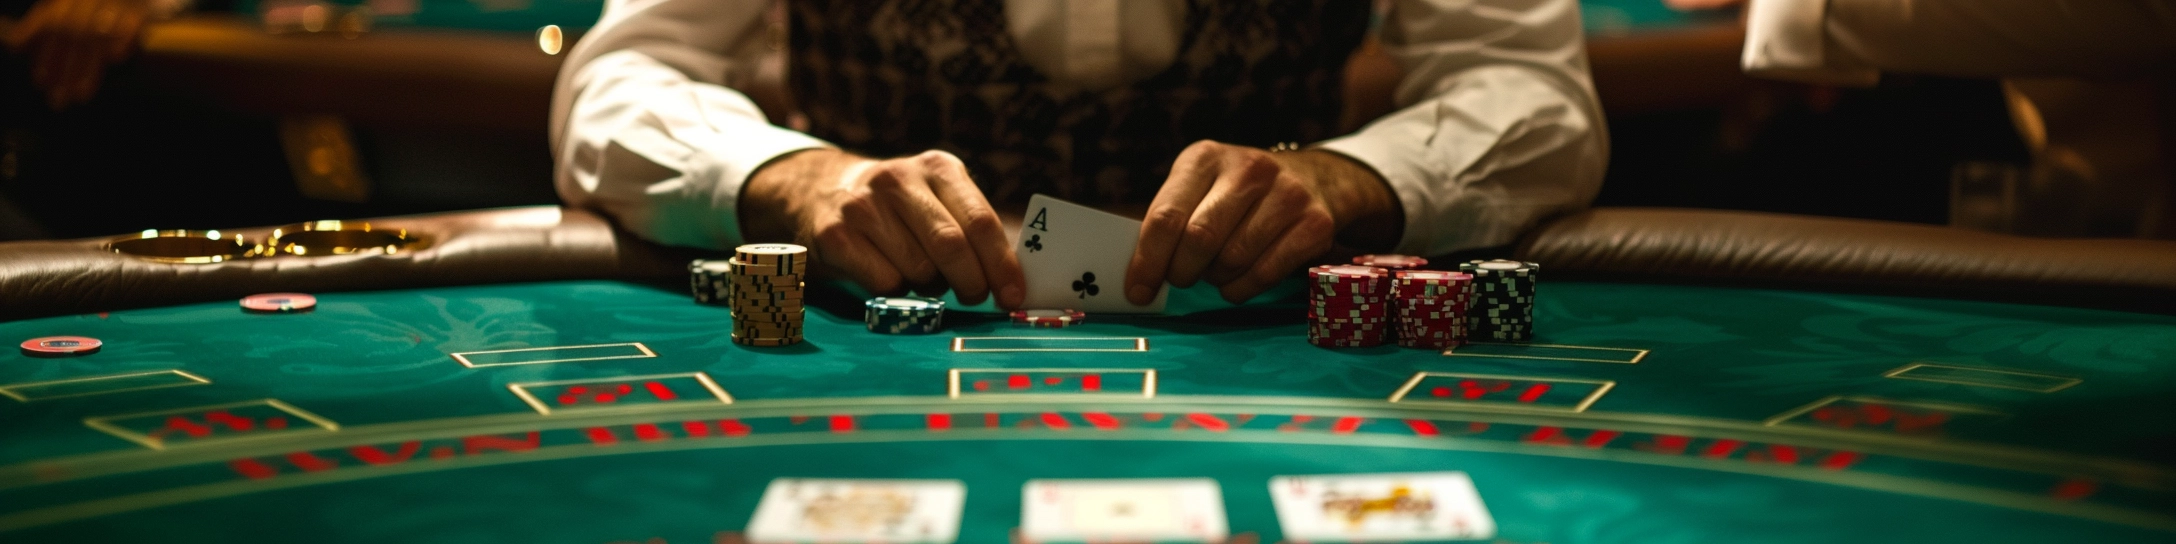 joueur de blackjack à une table